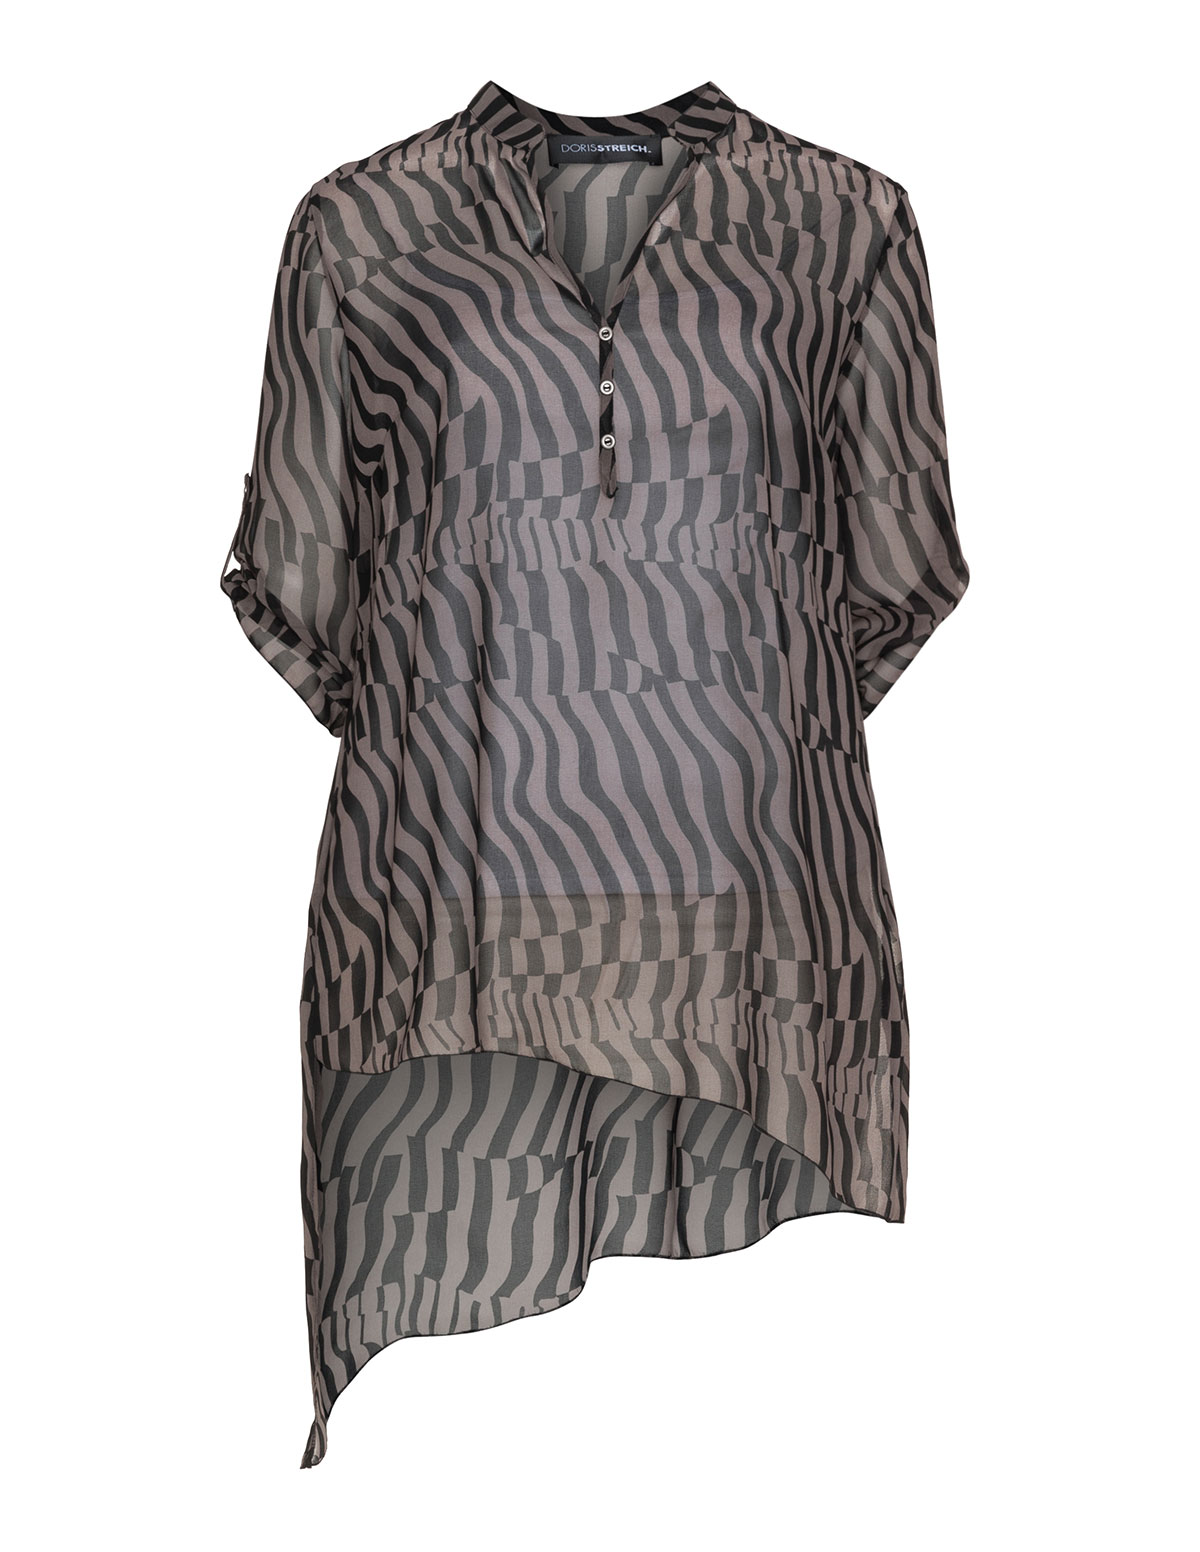 Asymmetric chiffon print blouse by
Doris Streich